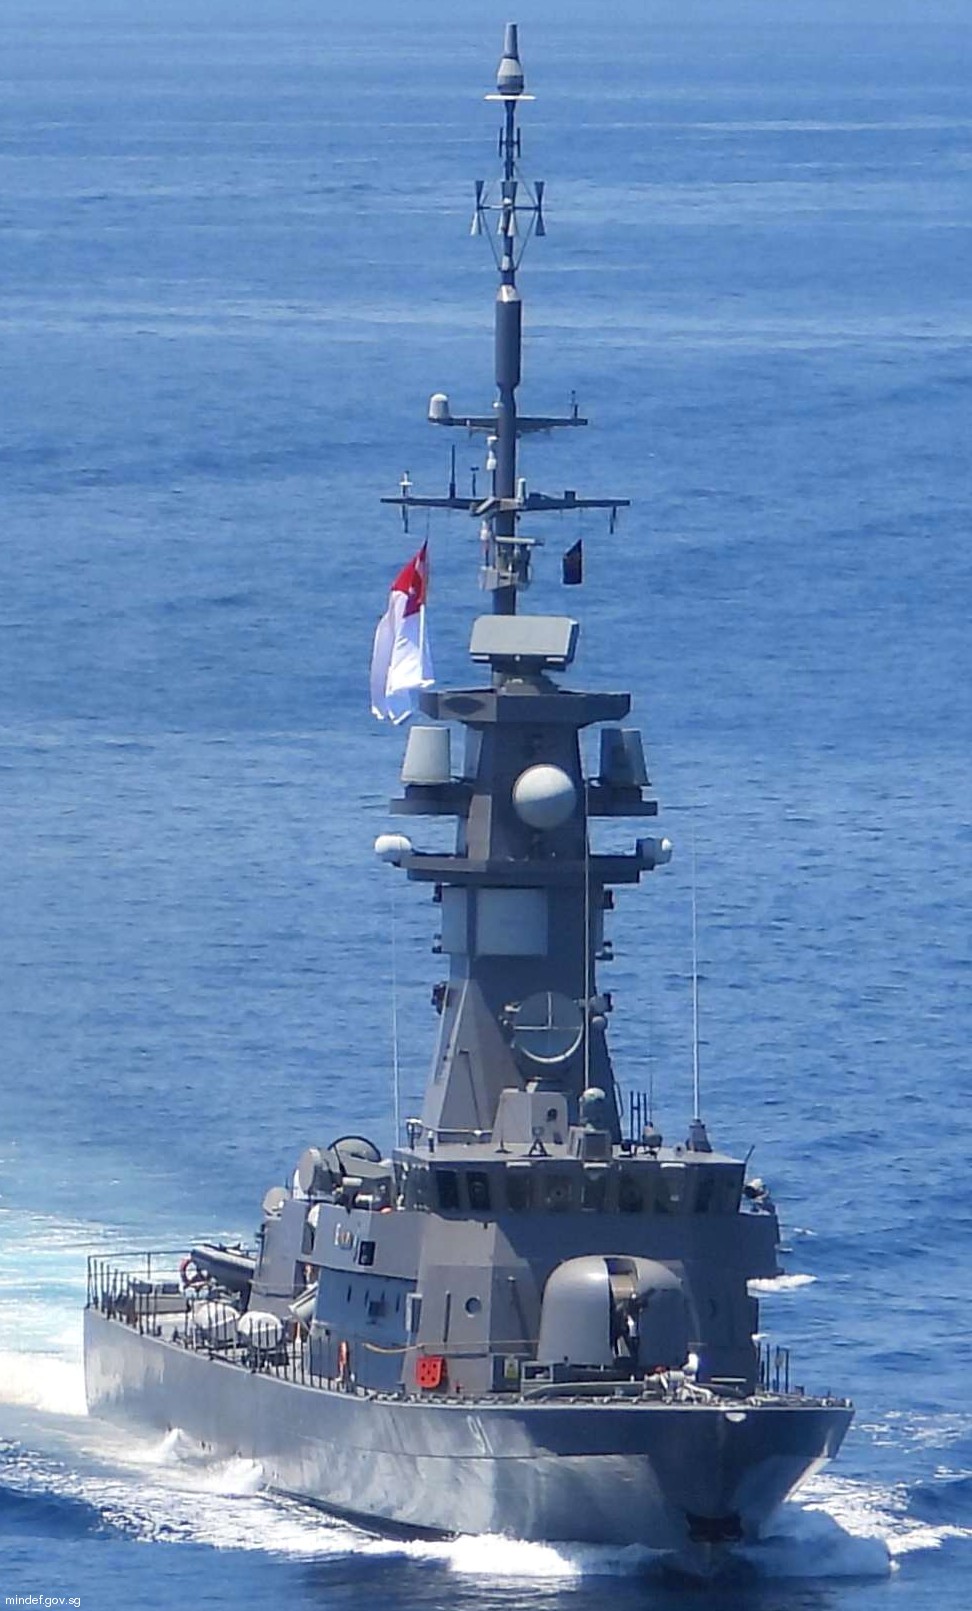 91 rss valiant victory class missile corvette republic singapore navy 11